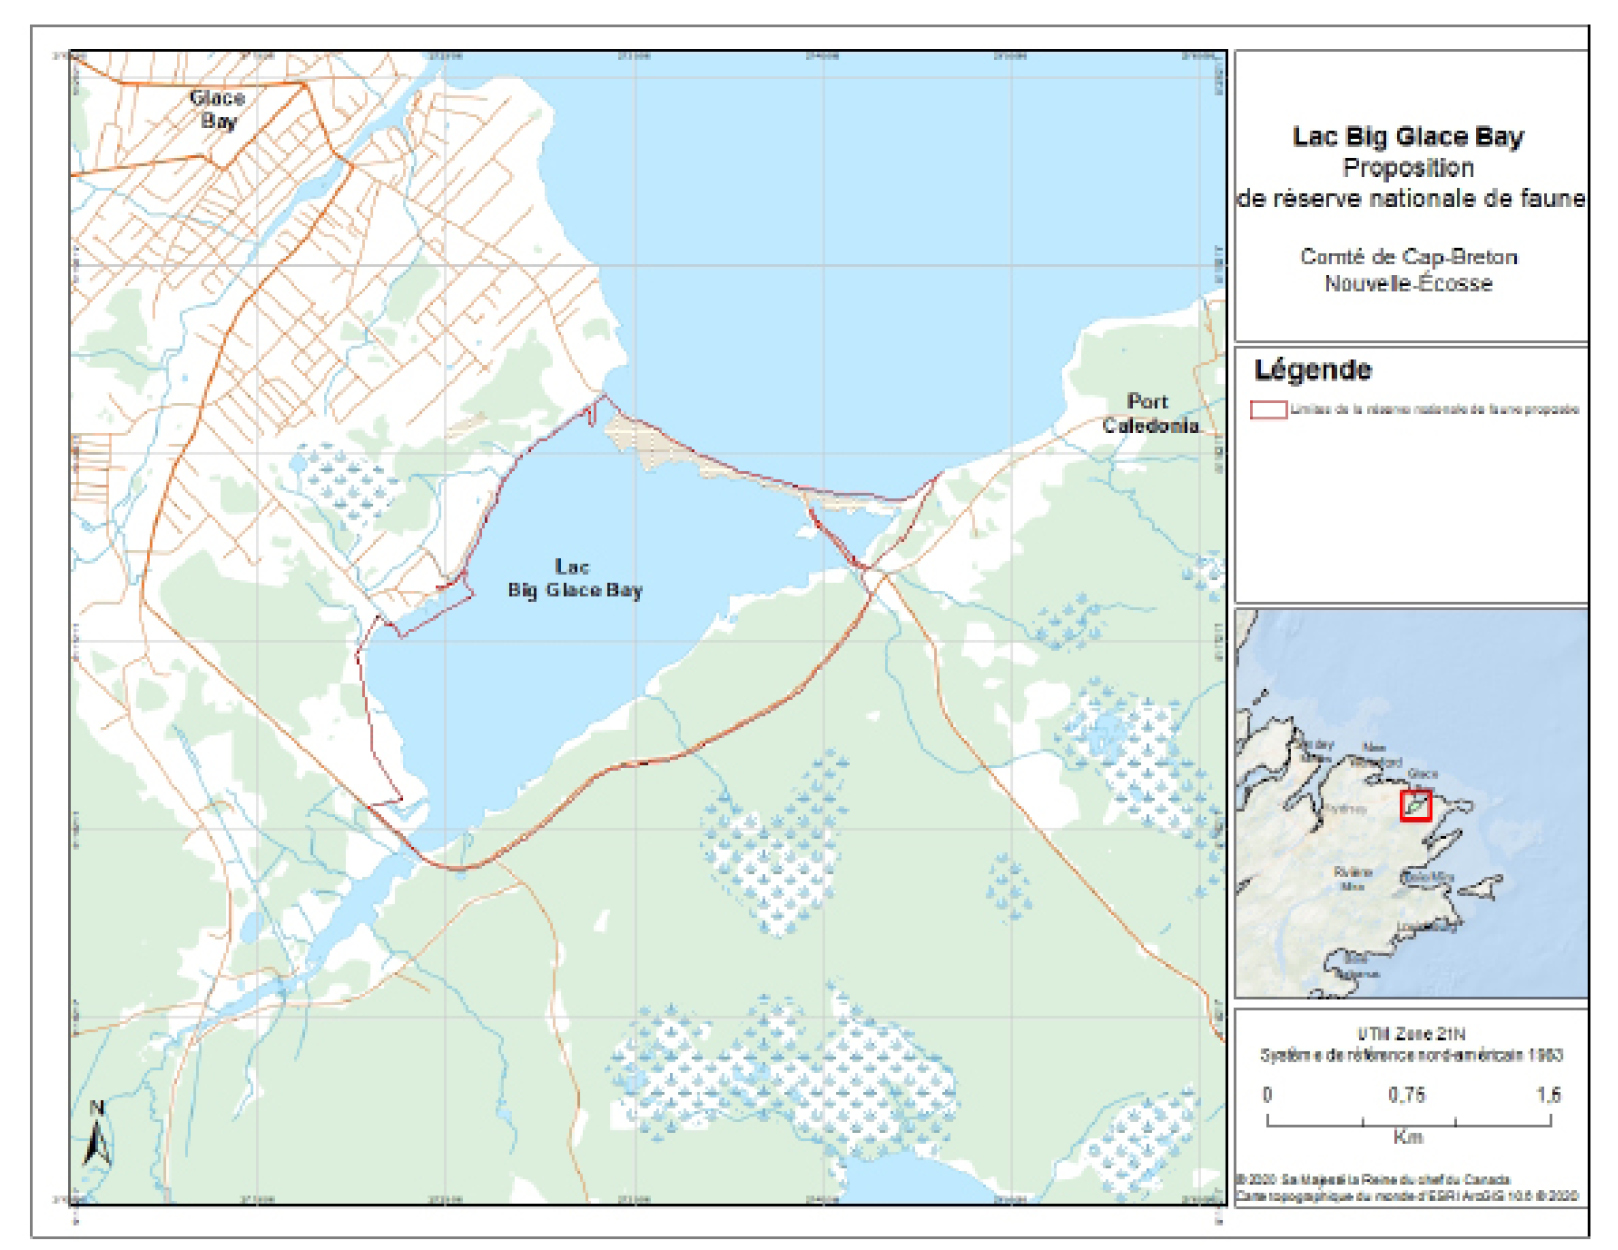 Figure 1. Carte de la réserve nationale de faune proposée du lac Big Glace Bay – Version textuelle en dessous de l'image